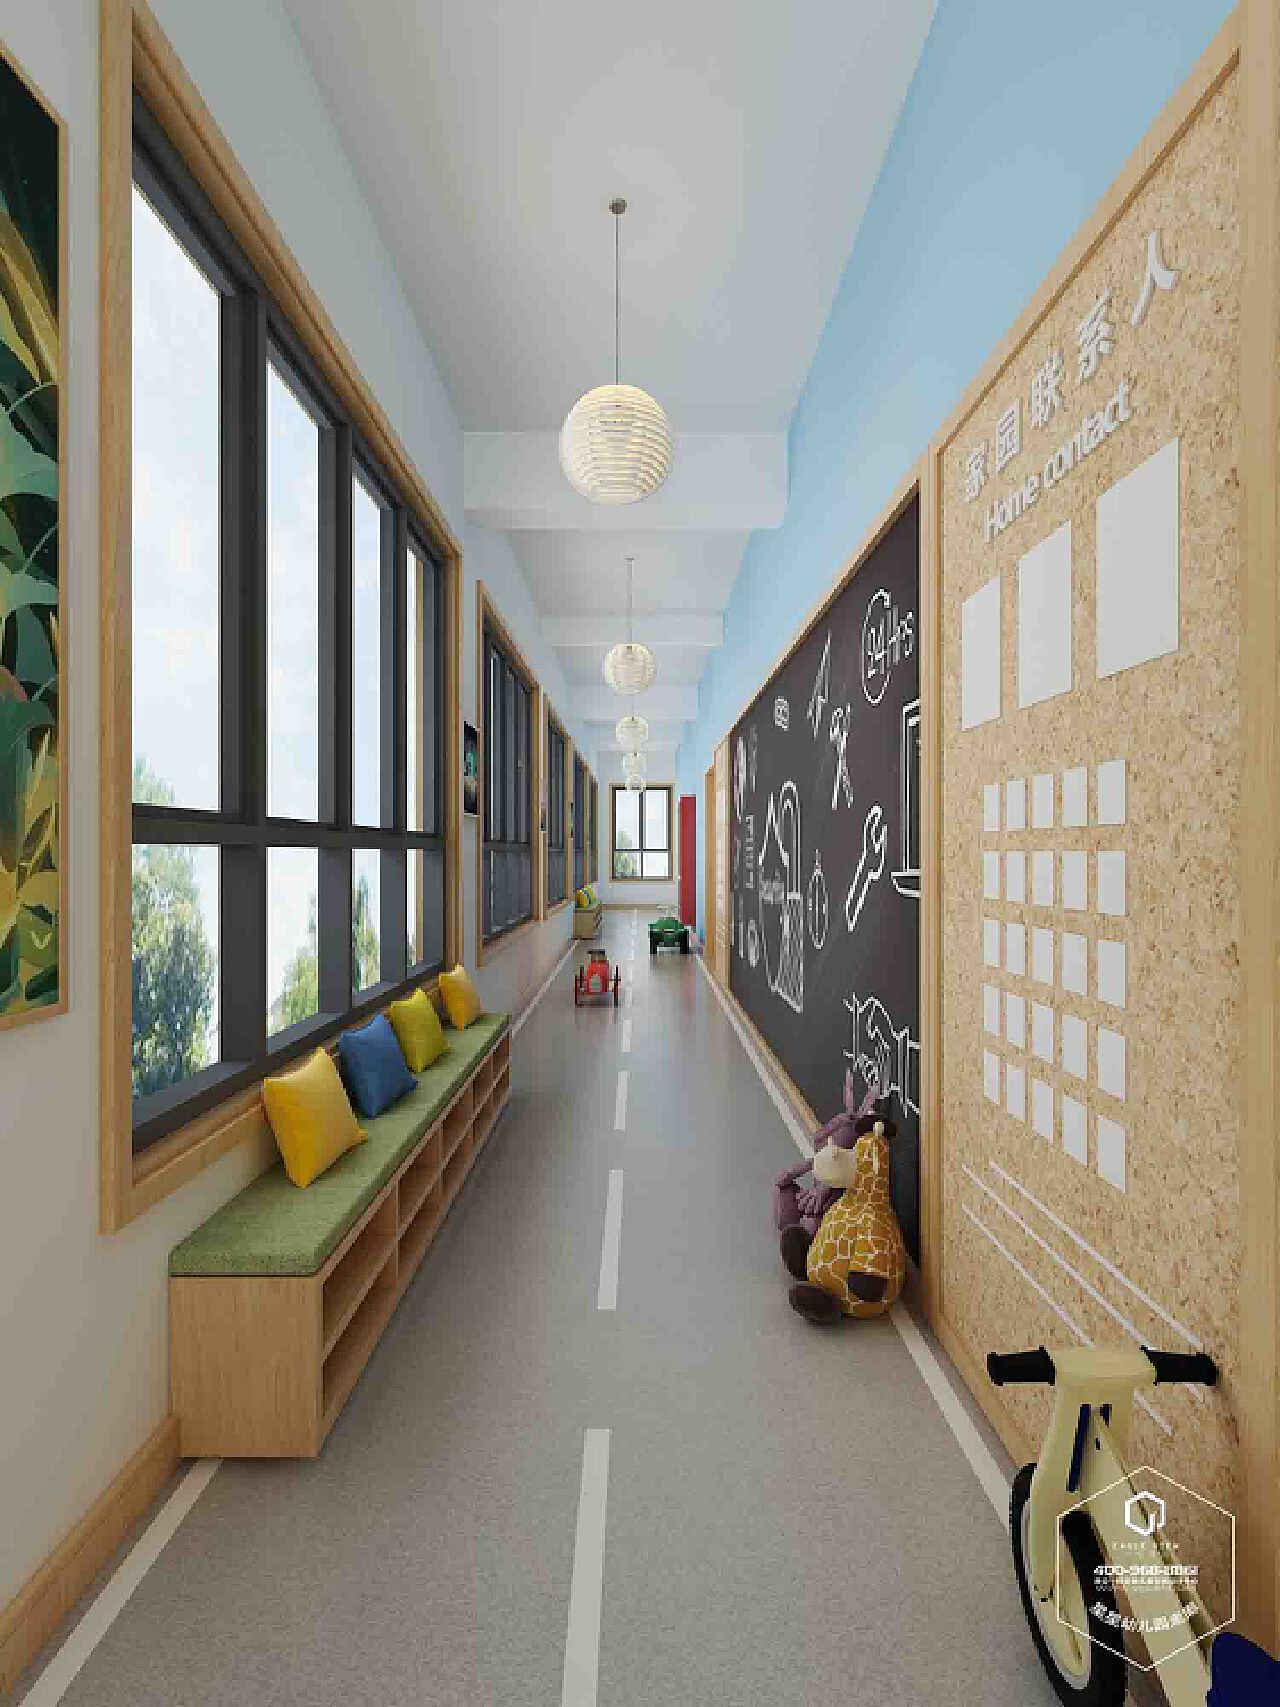 杭州星星幼儿园劳美空间综合设计 - 环境文化 - 杭州加冠广告有限公司